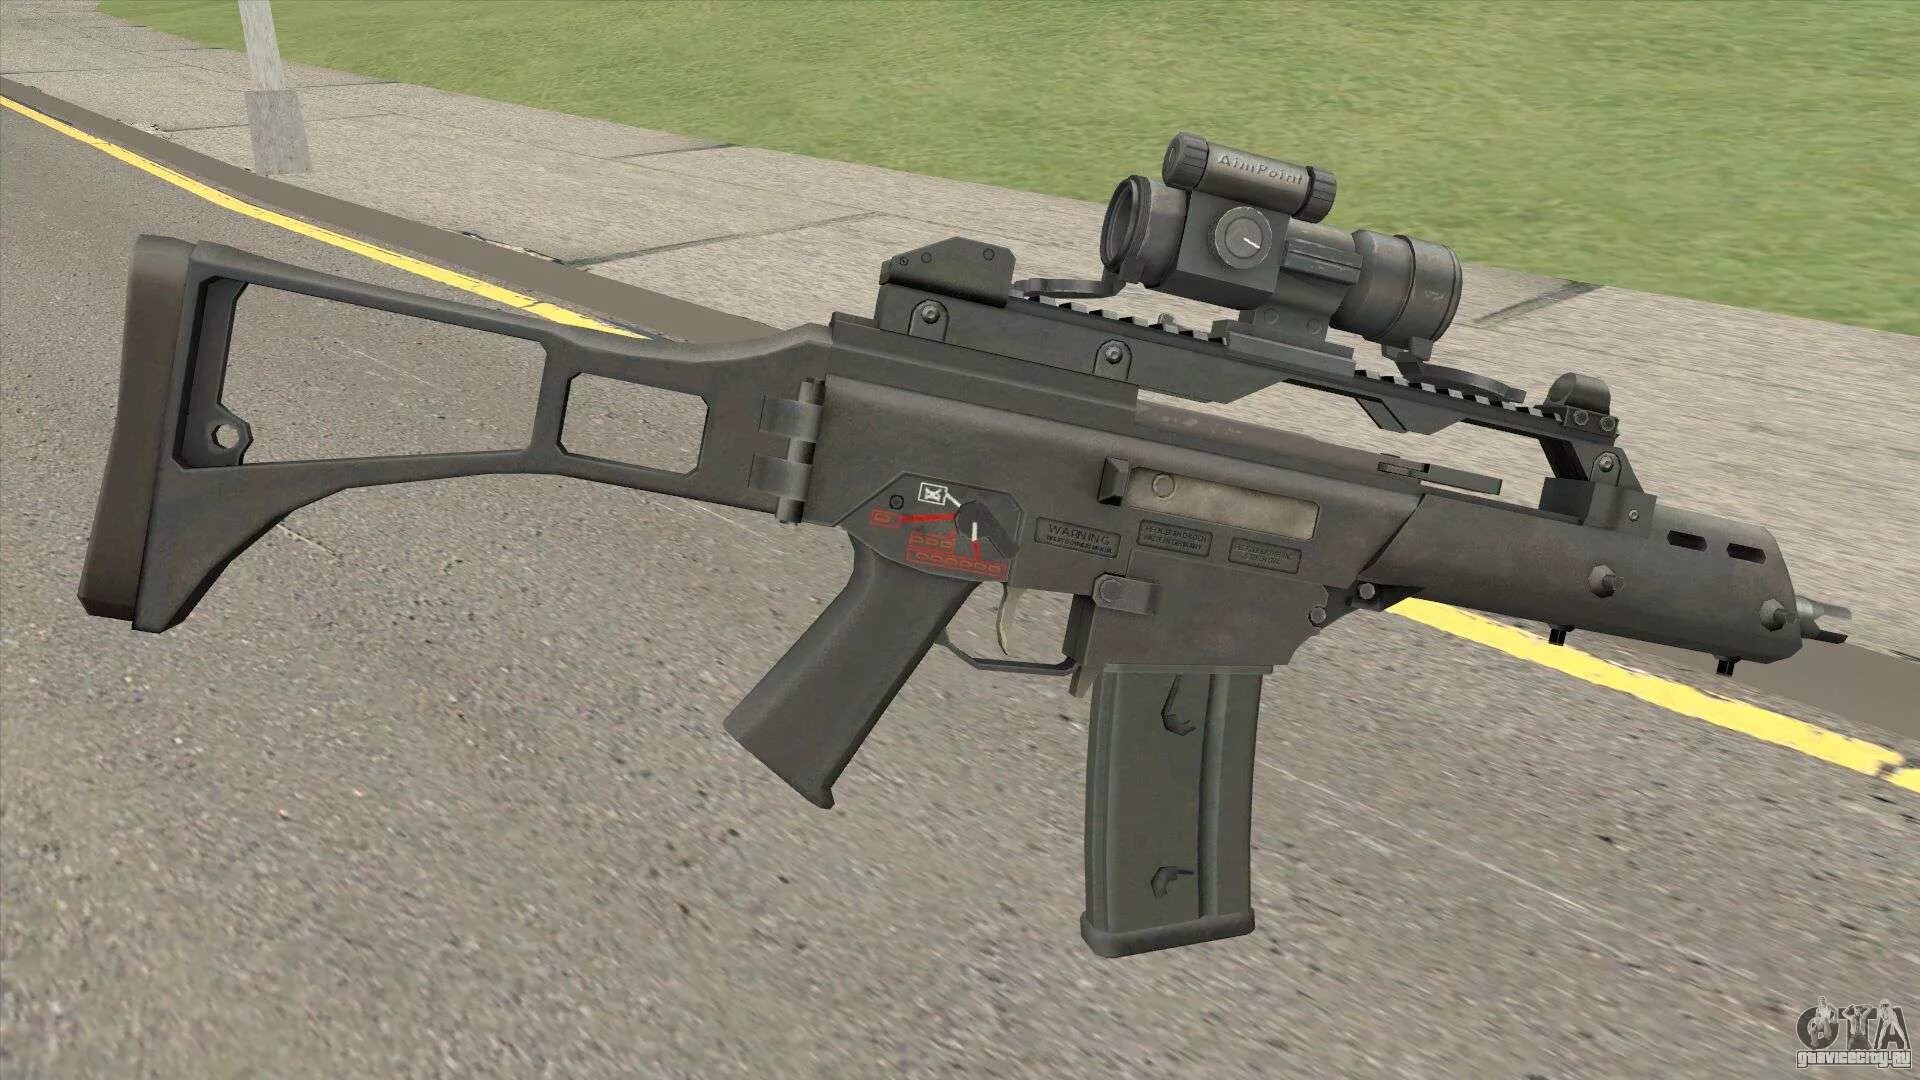 GTA HK g36c. G36. Оружие g36c с прицелом. G36 для ГТА СП.